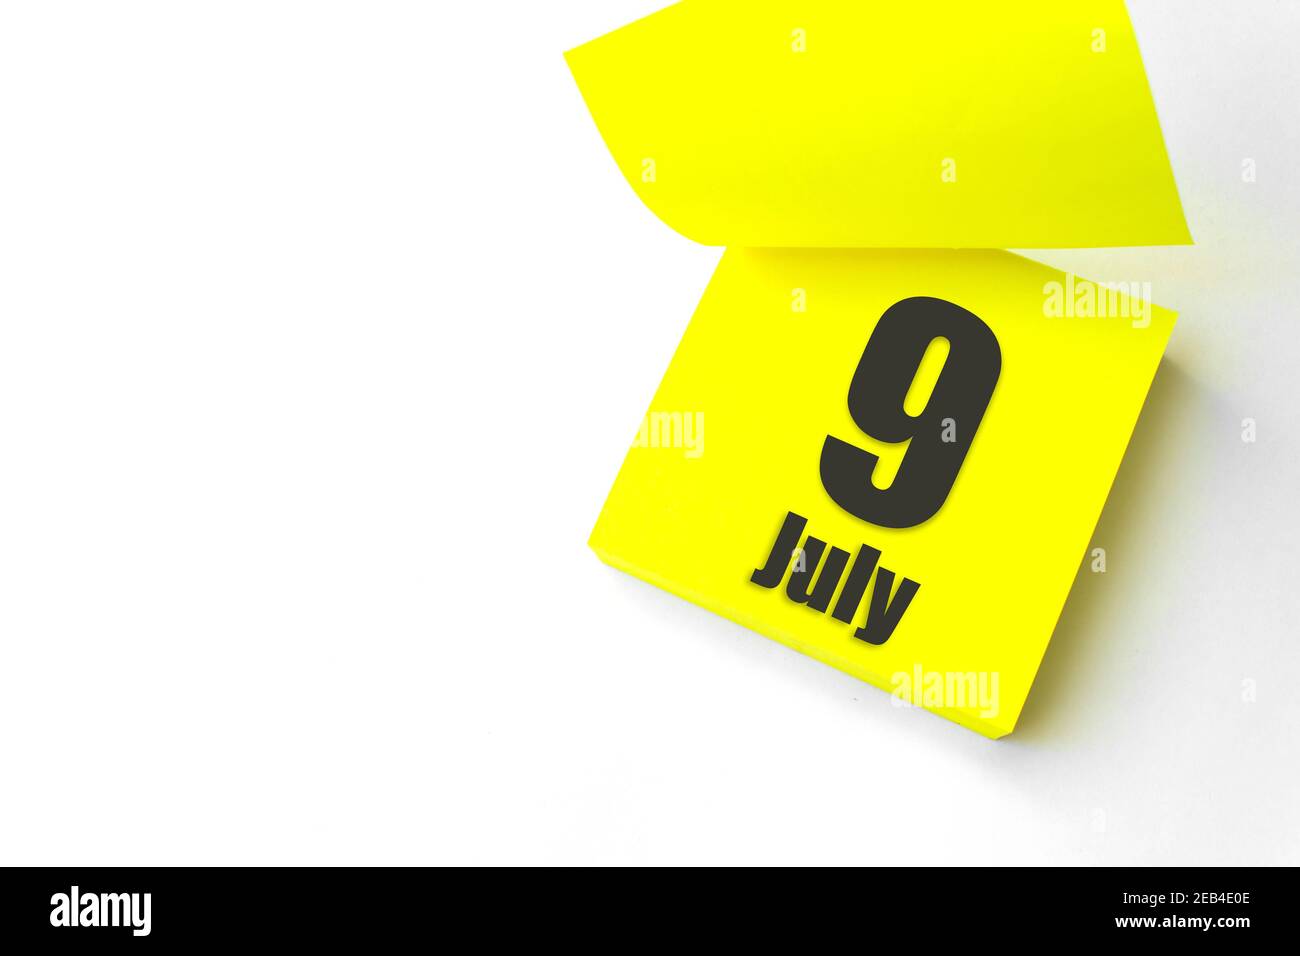 9 juillet. Jour 9 du mois, date du calendrier. Gros plan papier vierge autocollant de rappel jaune sur fond blanc. Concept mois d'été, jour de l'année Banque D'Images